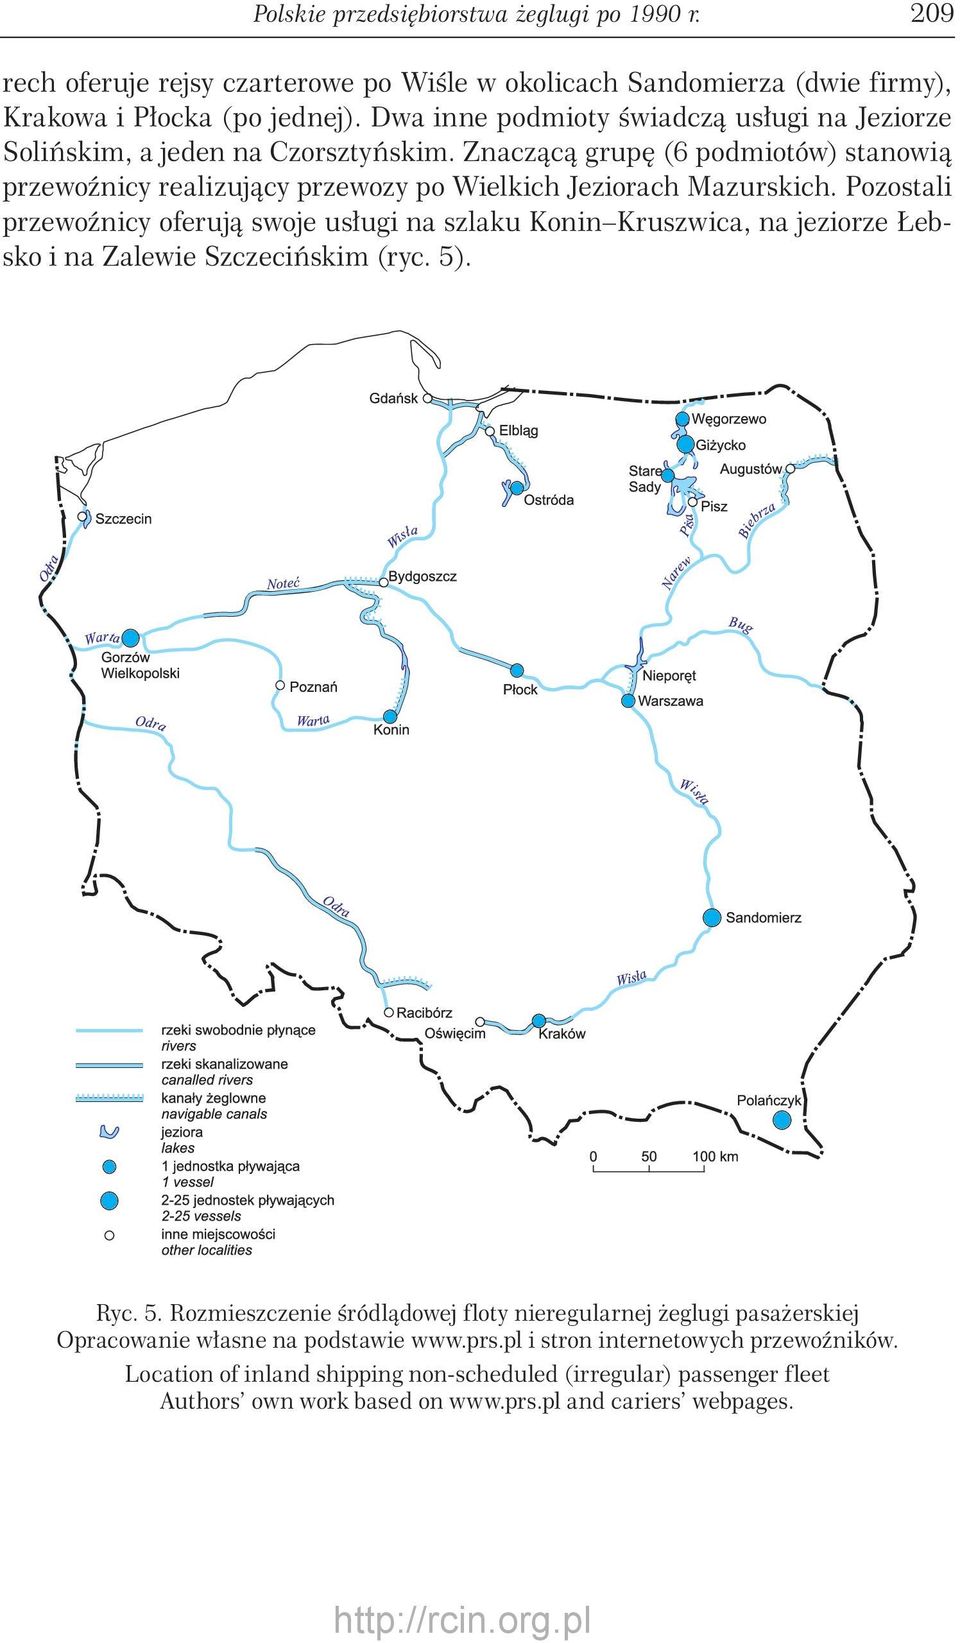 Pozostali przewoźnicy oferują swoje usługi na szlaku Konin Kruszwica, na jeziorze Łebsko i na Zalewie Szczecińskim (ryc. 5)